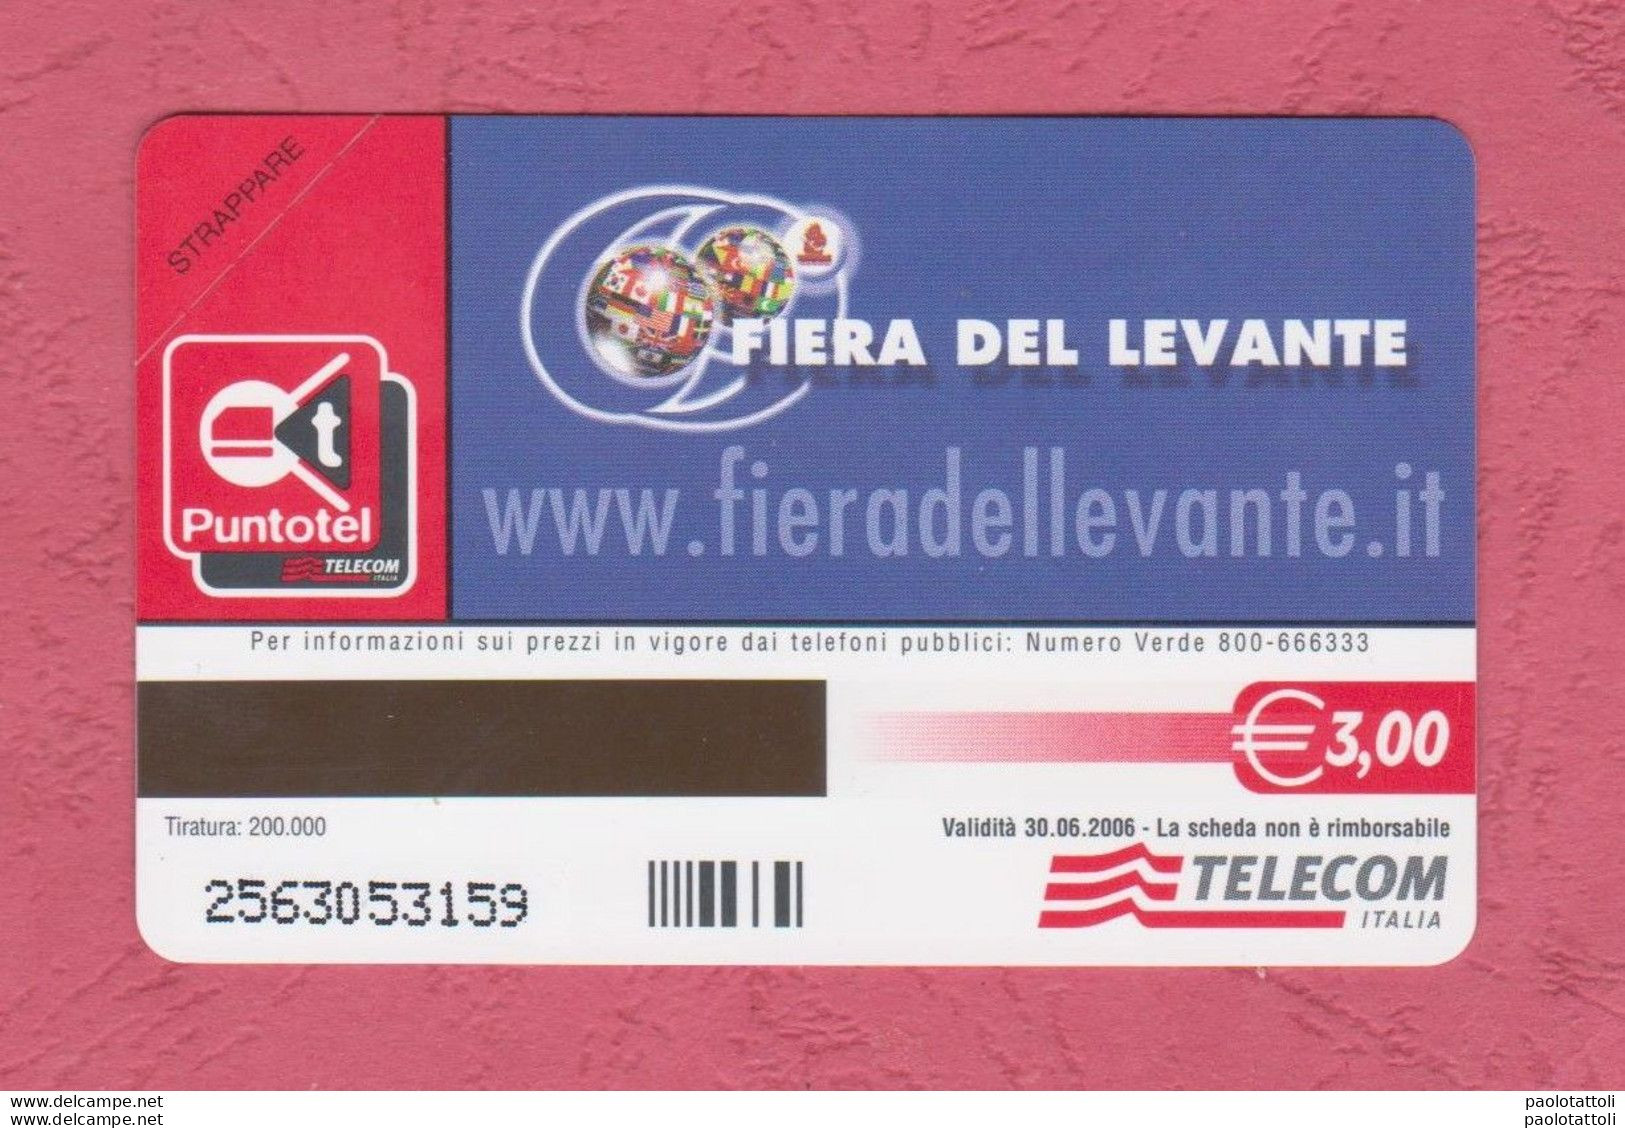 Italia, Italy- New, Nuova. Pre-Paid Phoone Card. Telecom. Bari; Fiera Del Levante, Sett;2005. Exp. 30.06.2006 - Public Special Or Commemorative